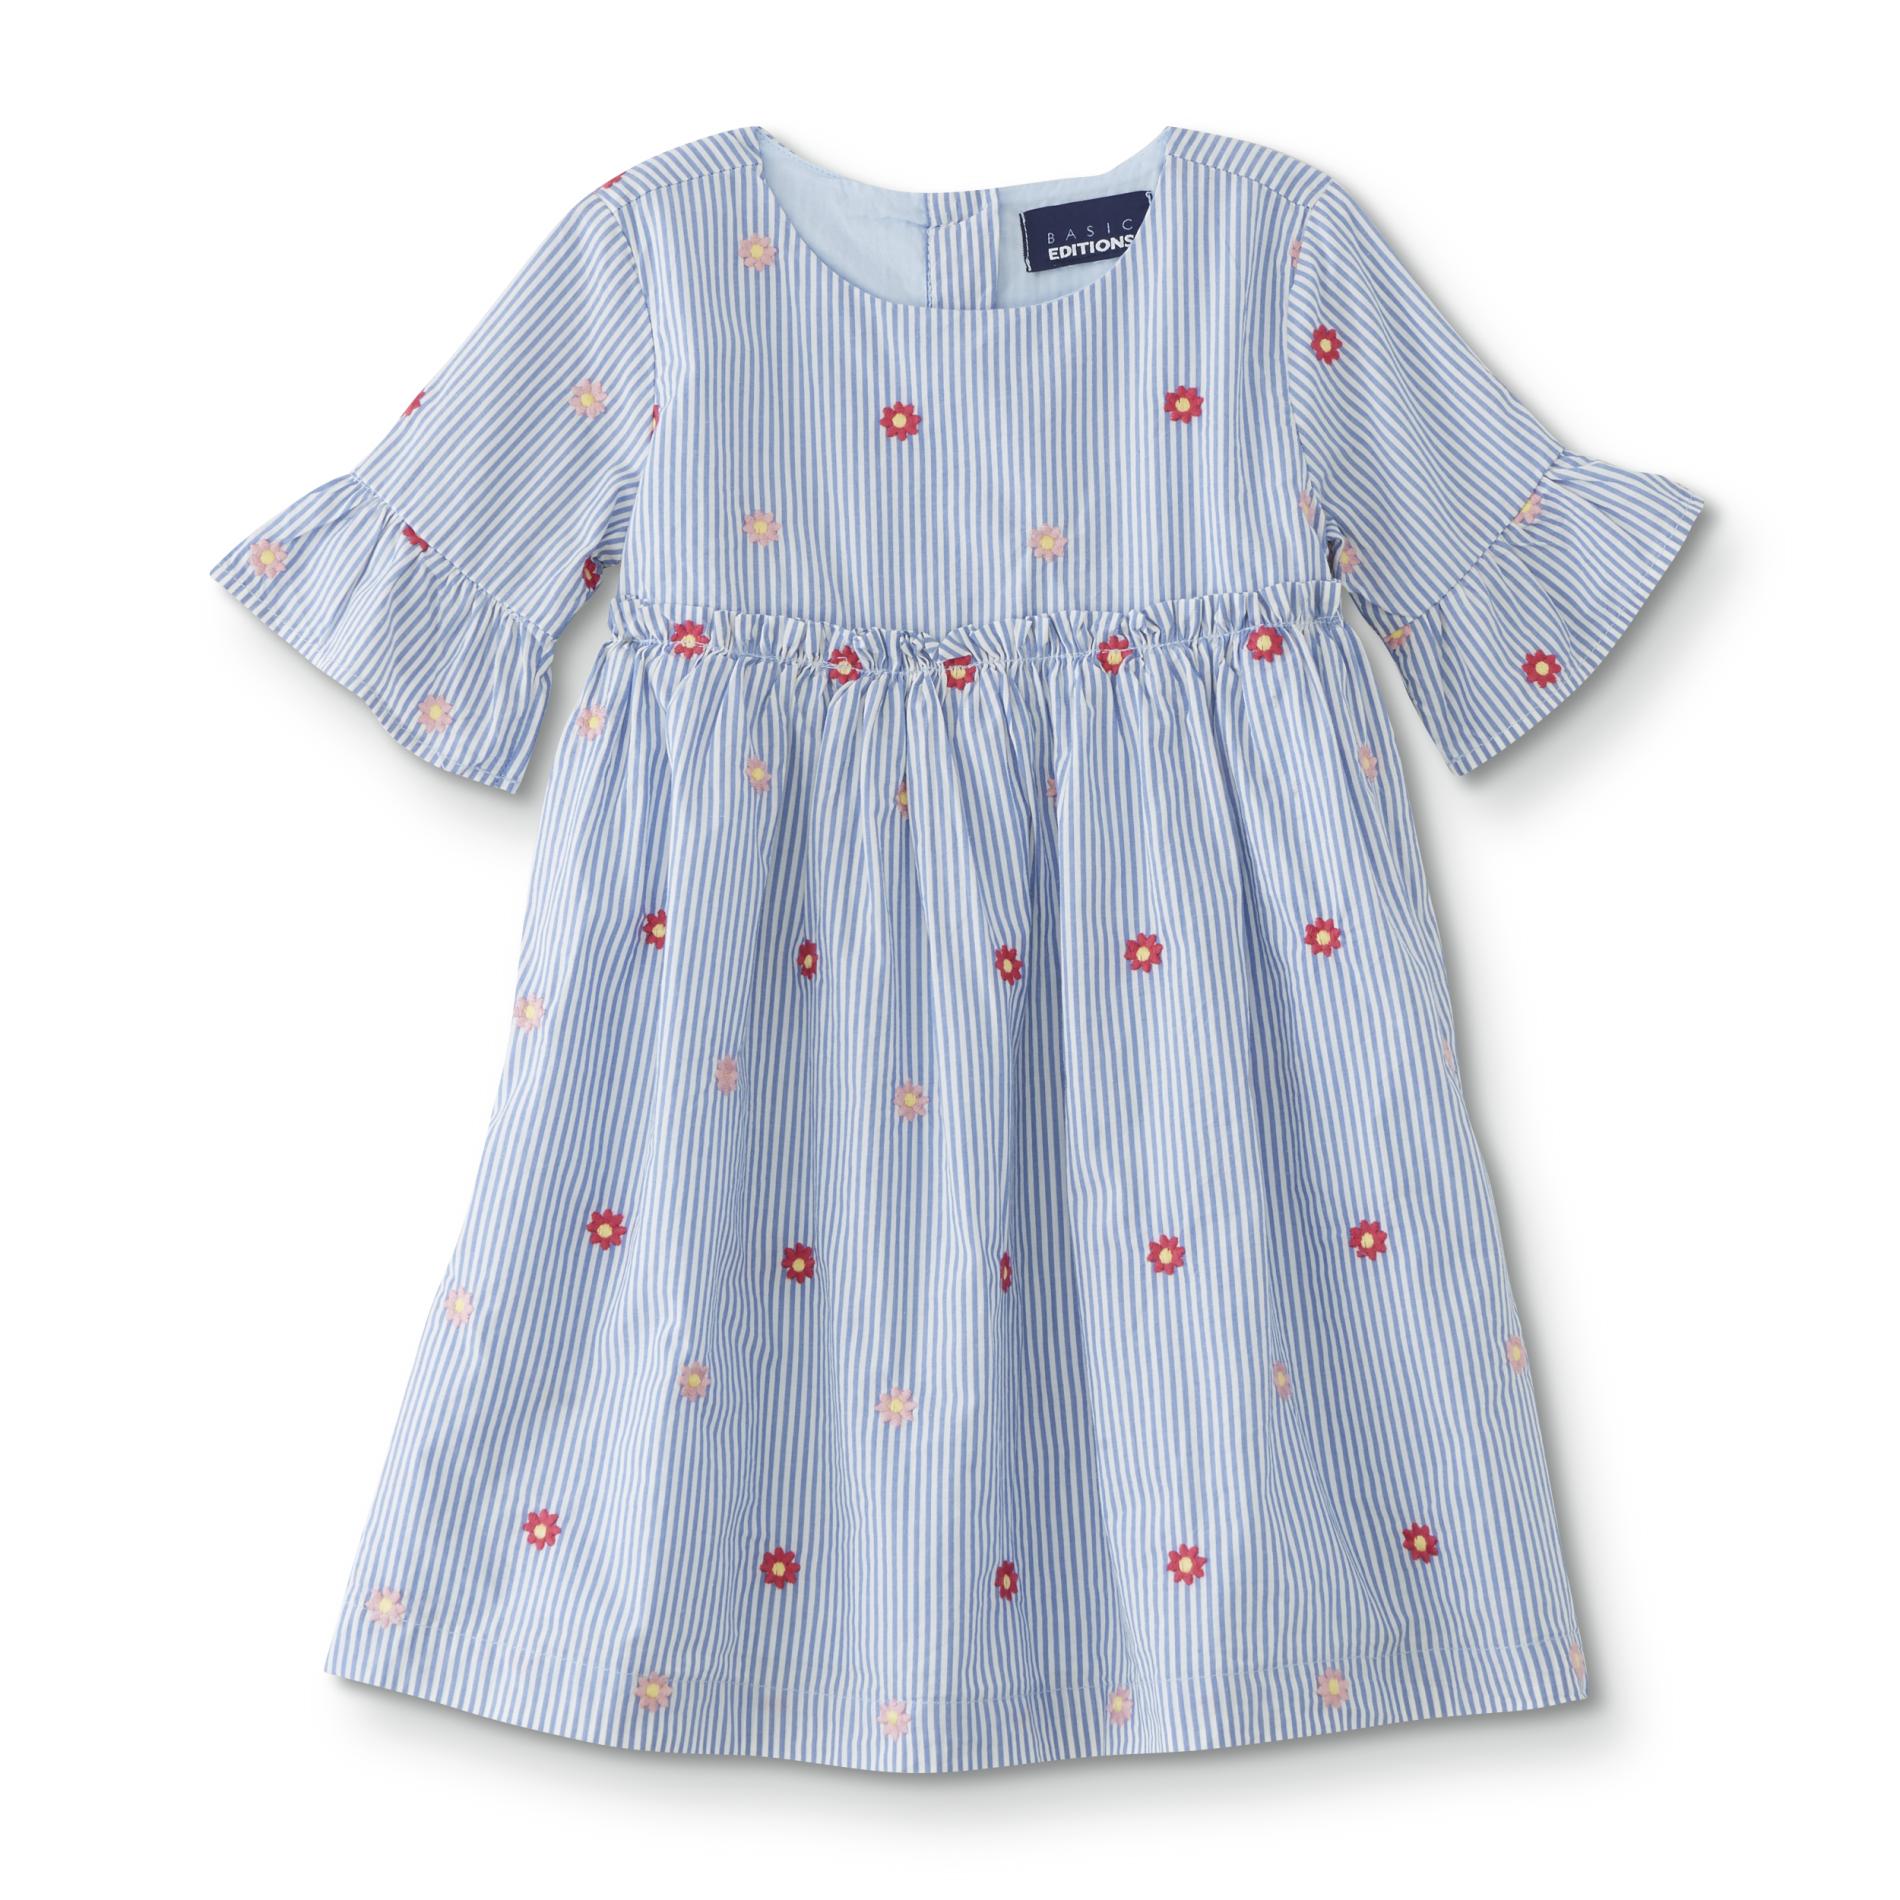 Toddler Girls' Smock Dress - Striped/Floral